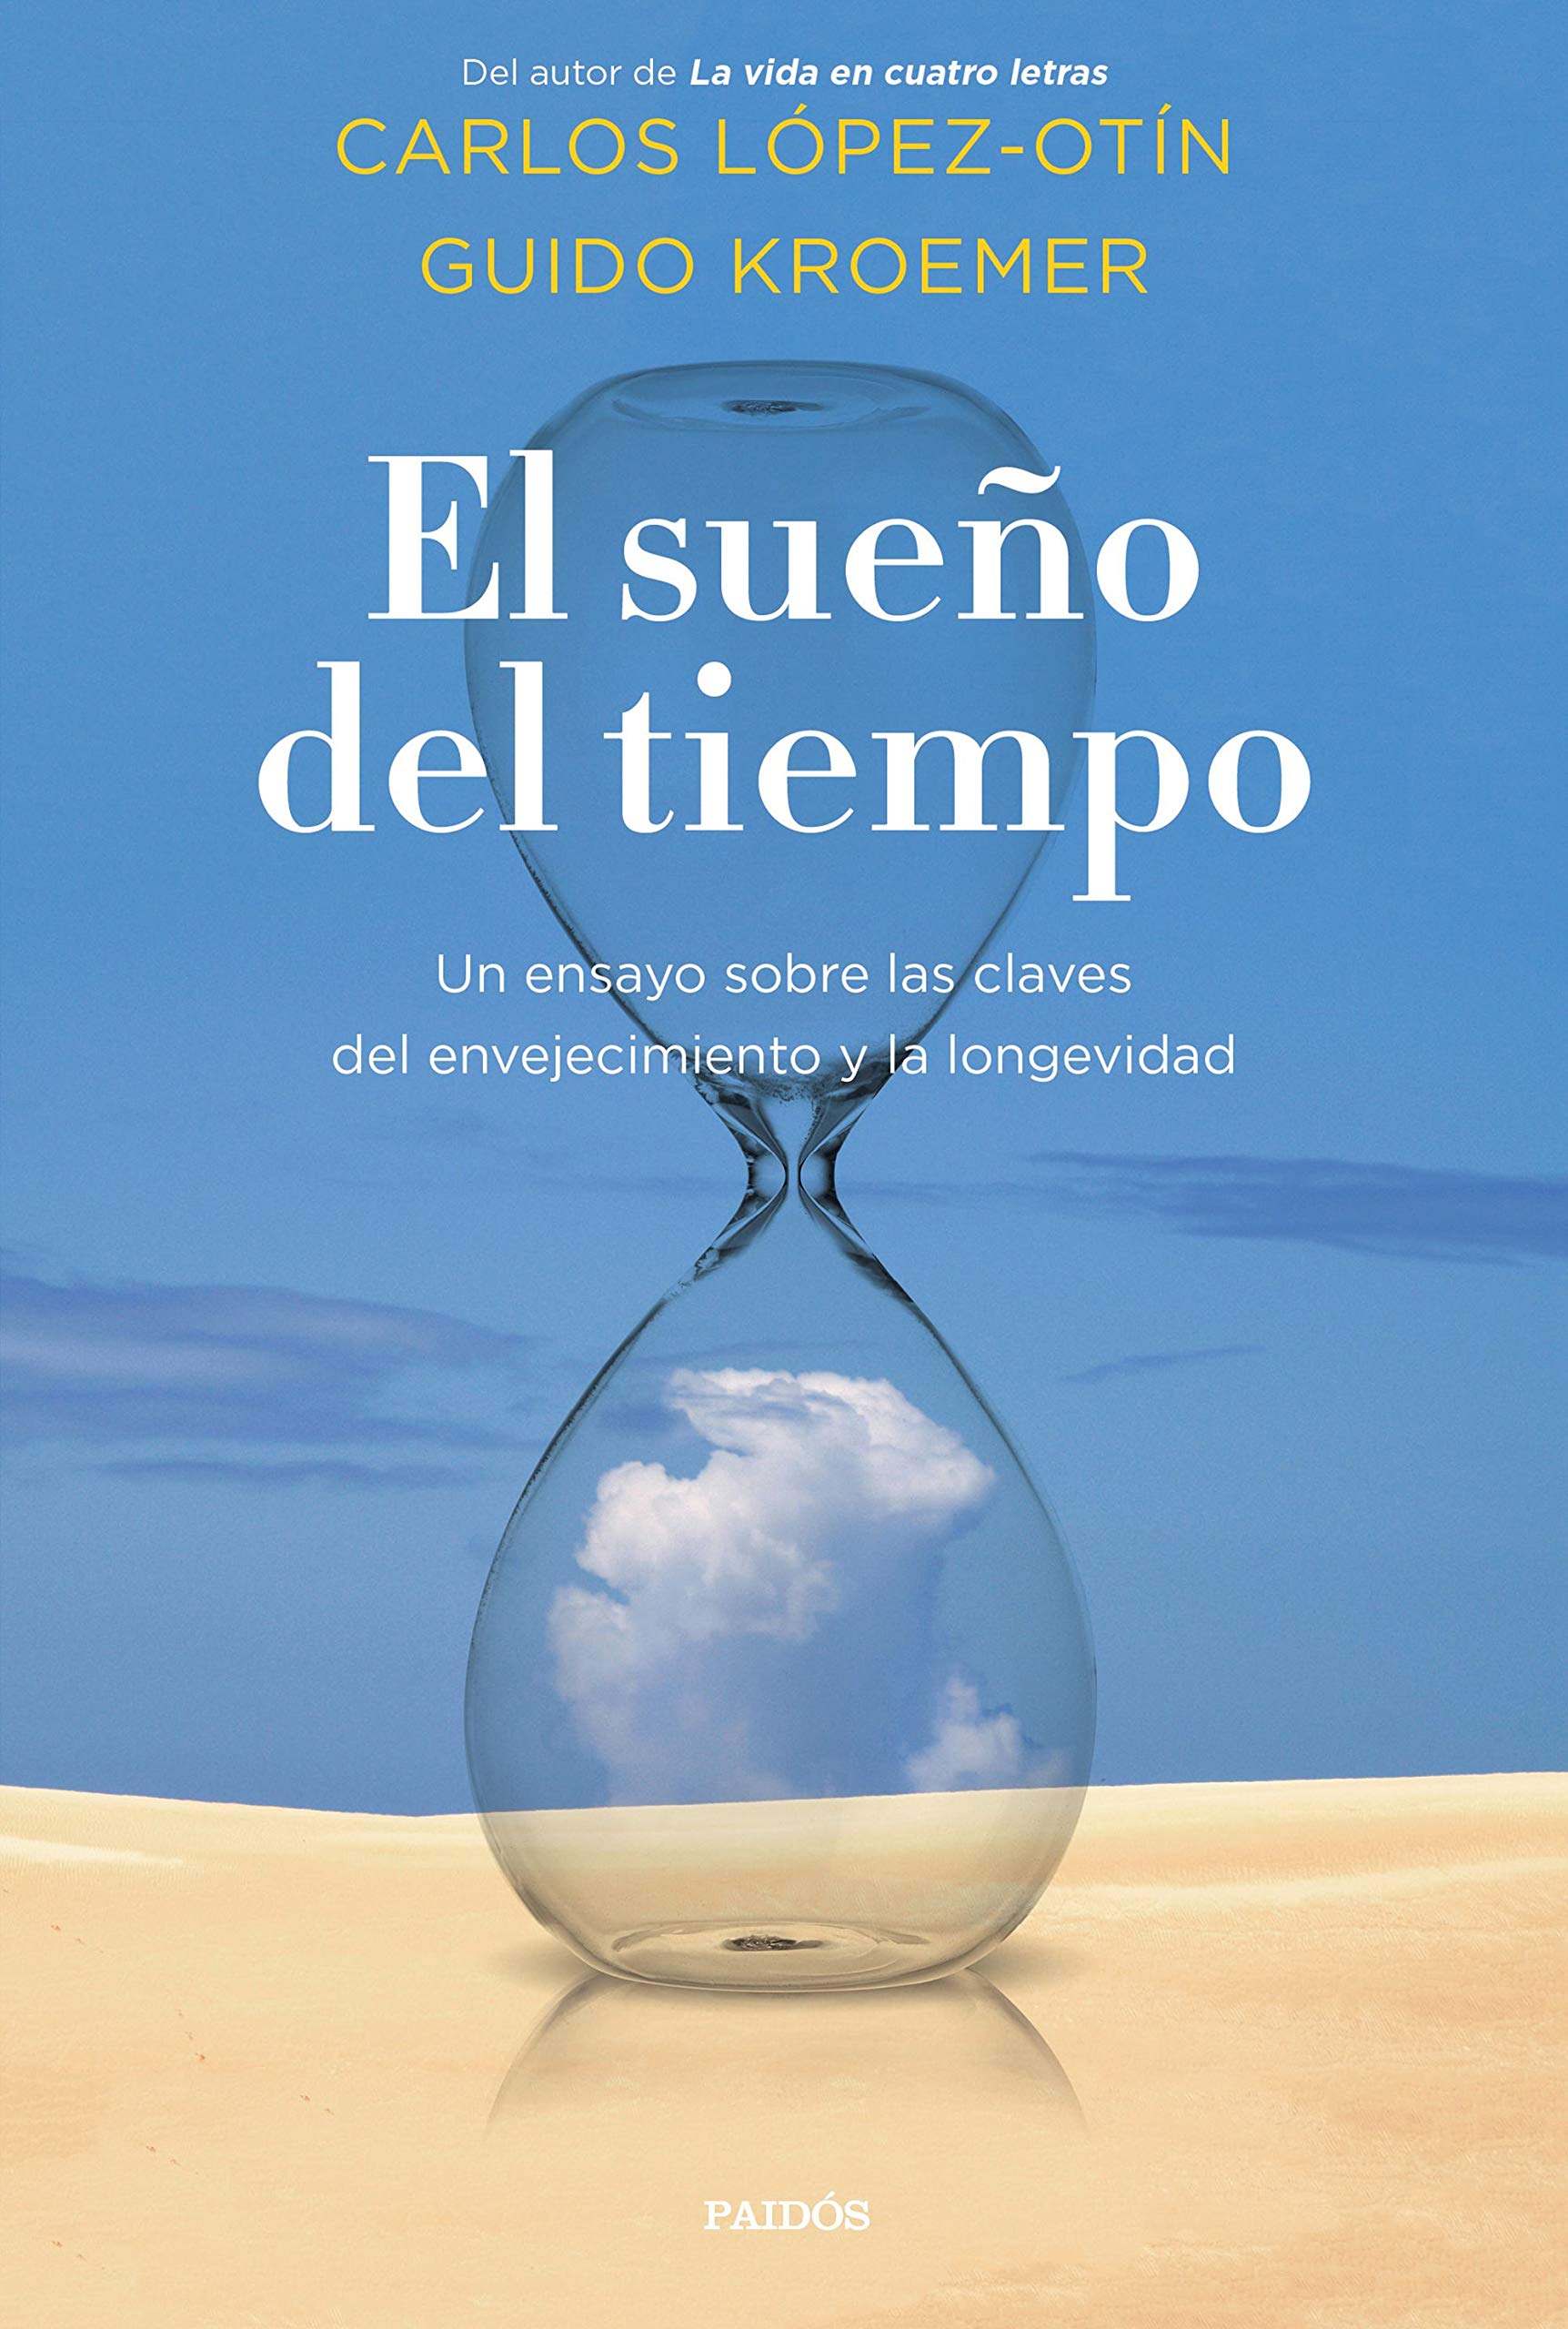 El sueño del tiempo, de Carlos López-Otín y Guido Kroemer